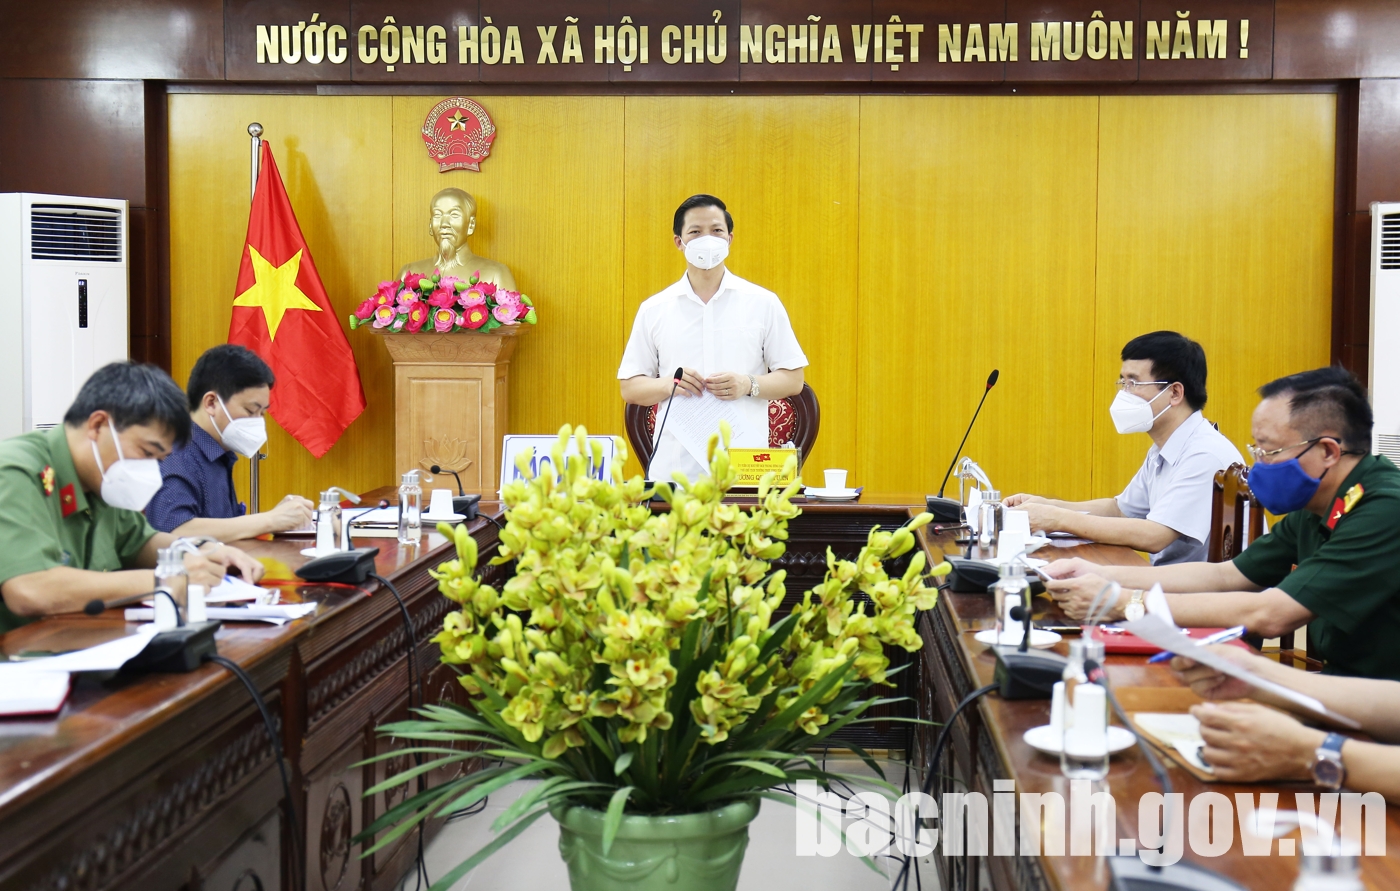 Phó Thủ tướng Chính phủ họp trực tuyến với tỉnh Bắc Ninh về triển khai các biện pháp cấp bách phòng, chống dịch Covid - 19